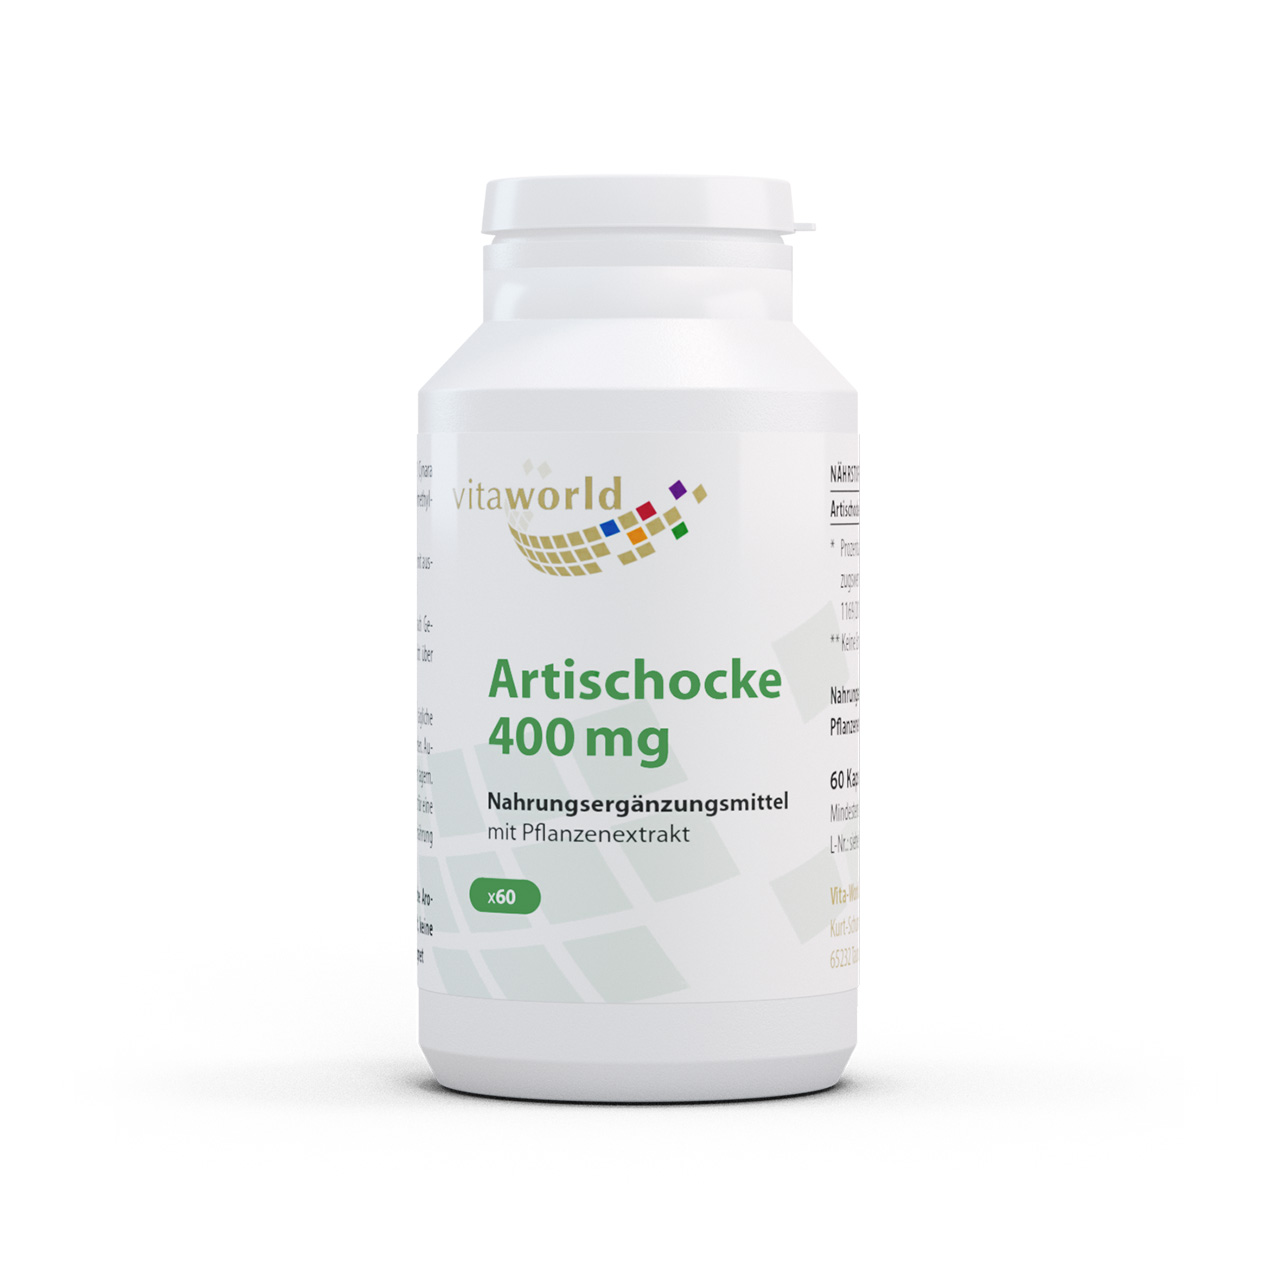 Artischocke 400 mg (60 Kps)